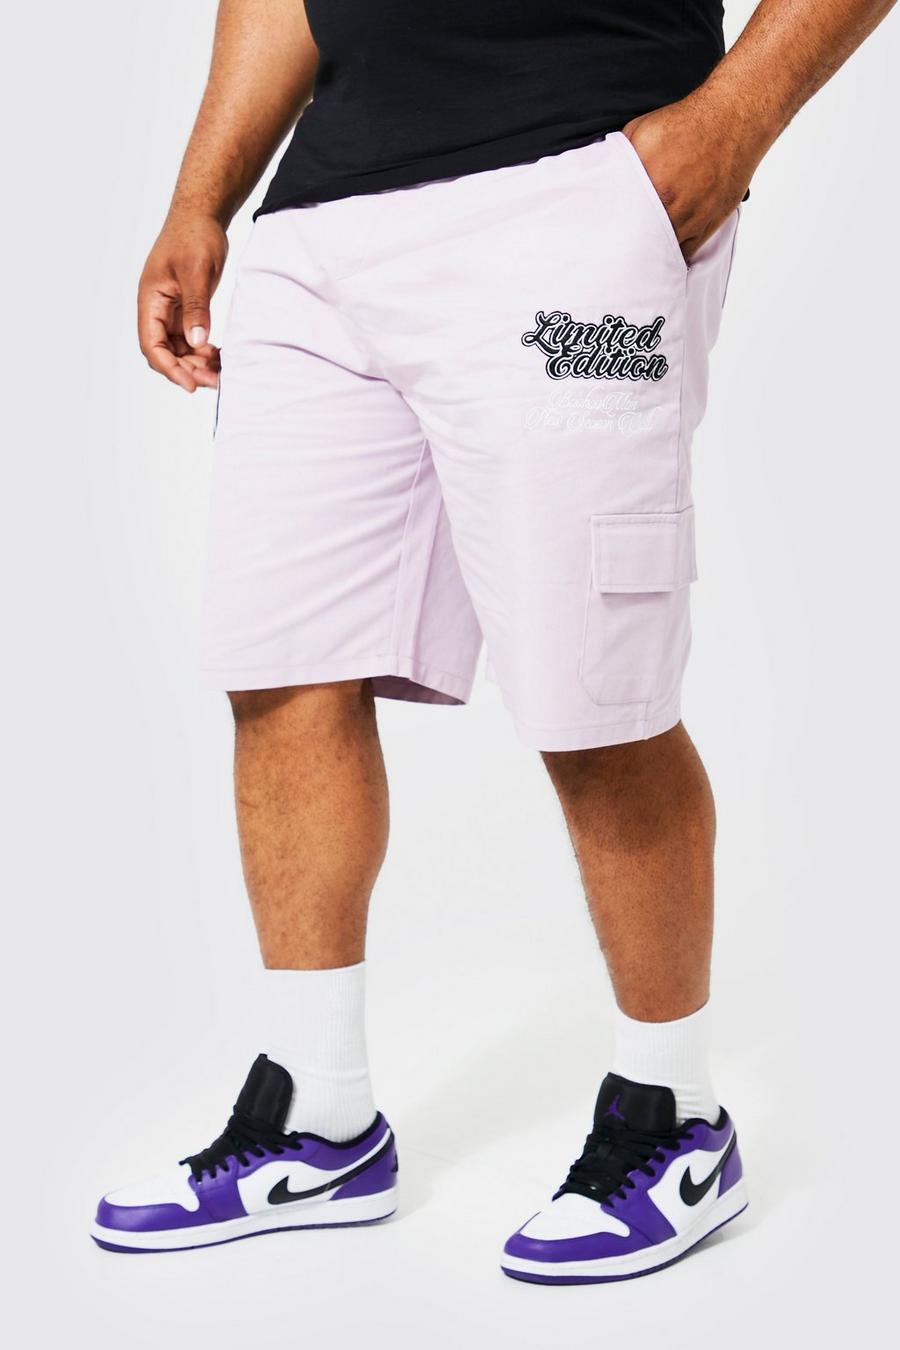 Pantalones cortos Plus cargo holgados con estampado universitario, Lilac morado image number 1